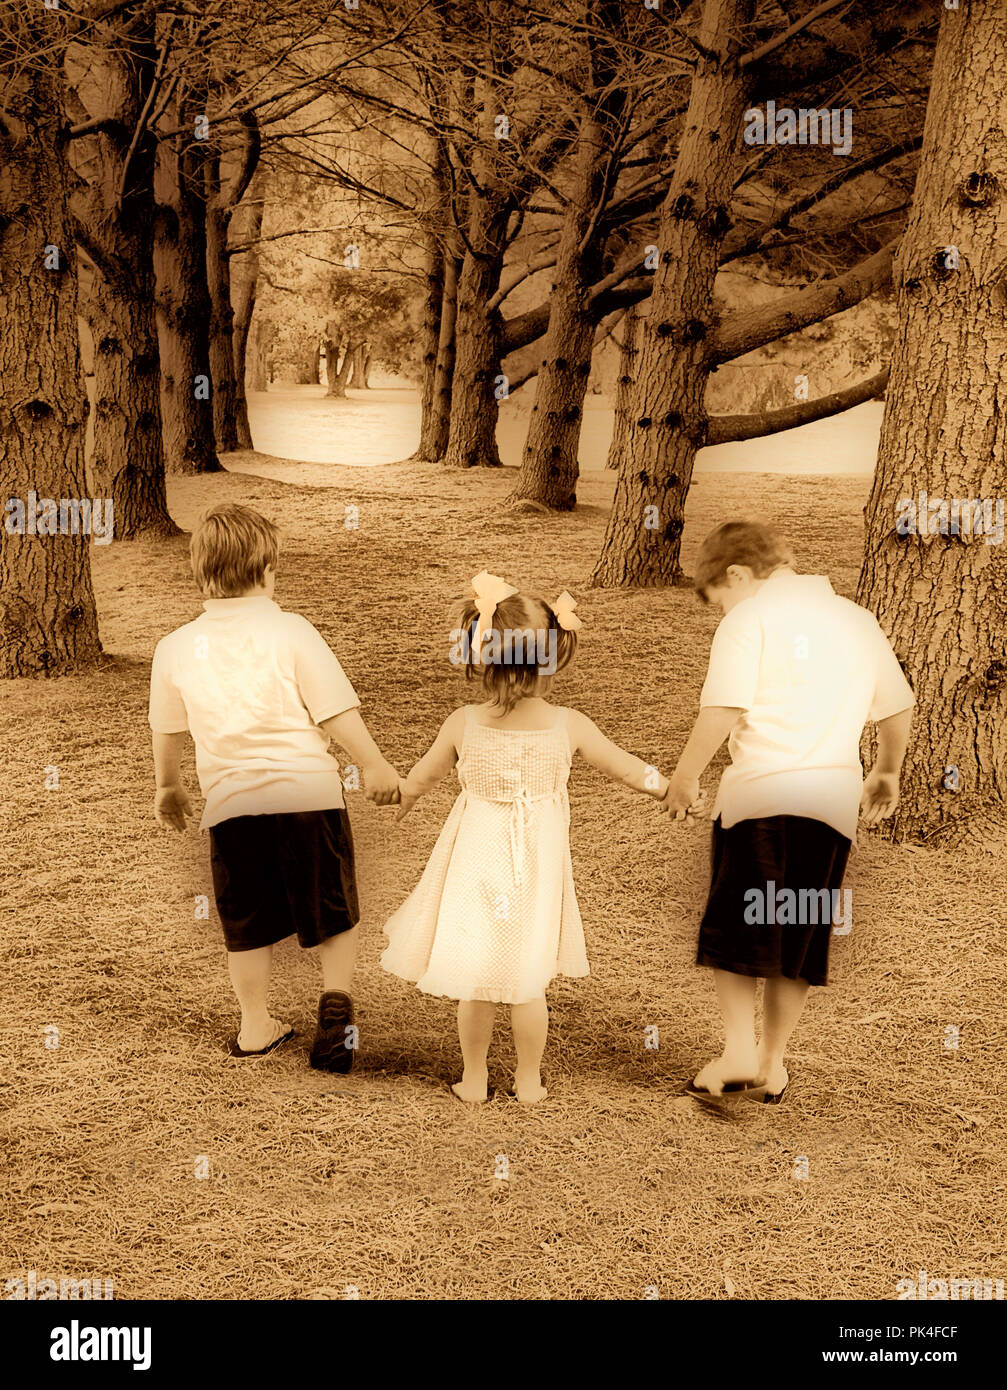 Fratelli e sorelle camminando per un sentiero mano nella mano tra i pini.  Immagine virati al nero di seppia i colori per un effetto vintage Foto  stock - Alamy